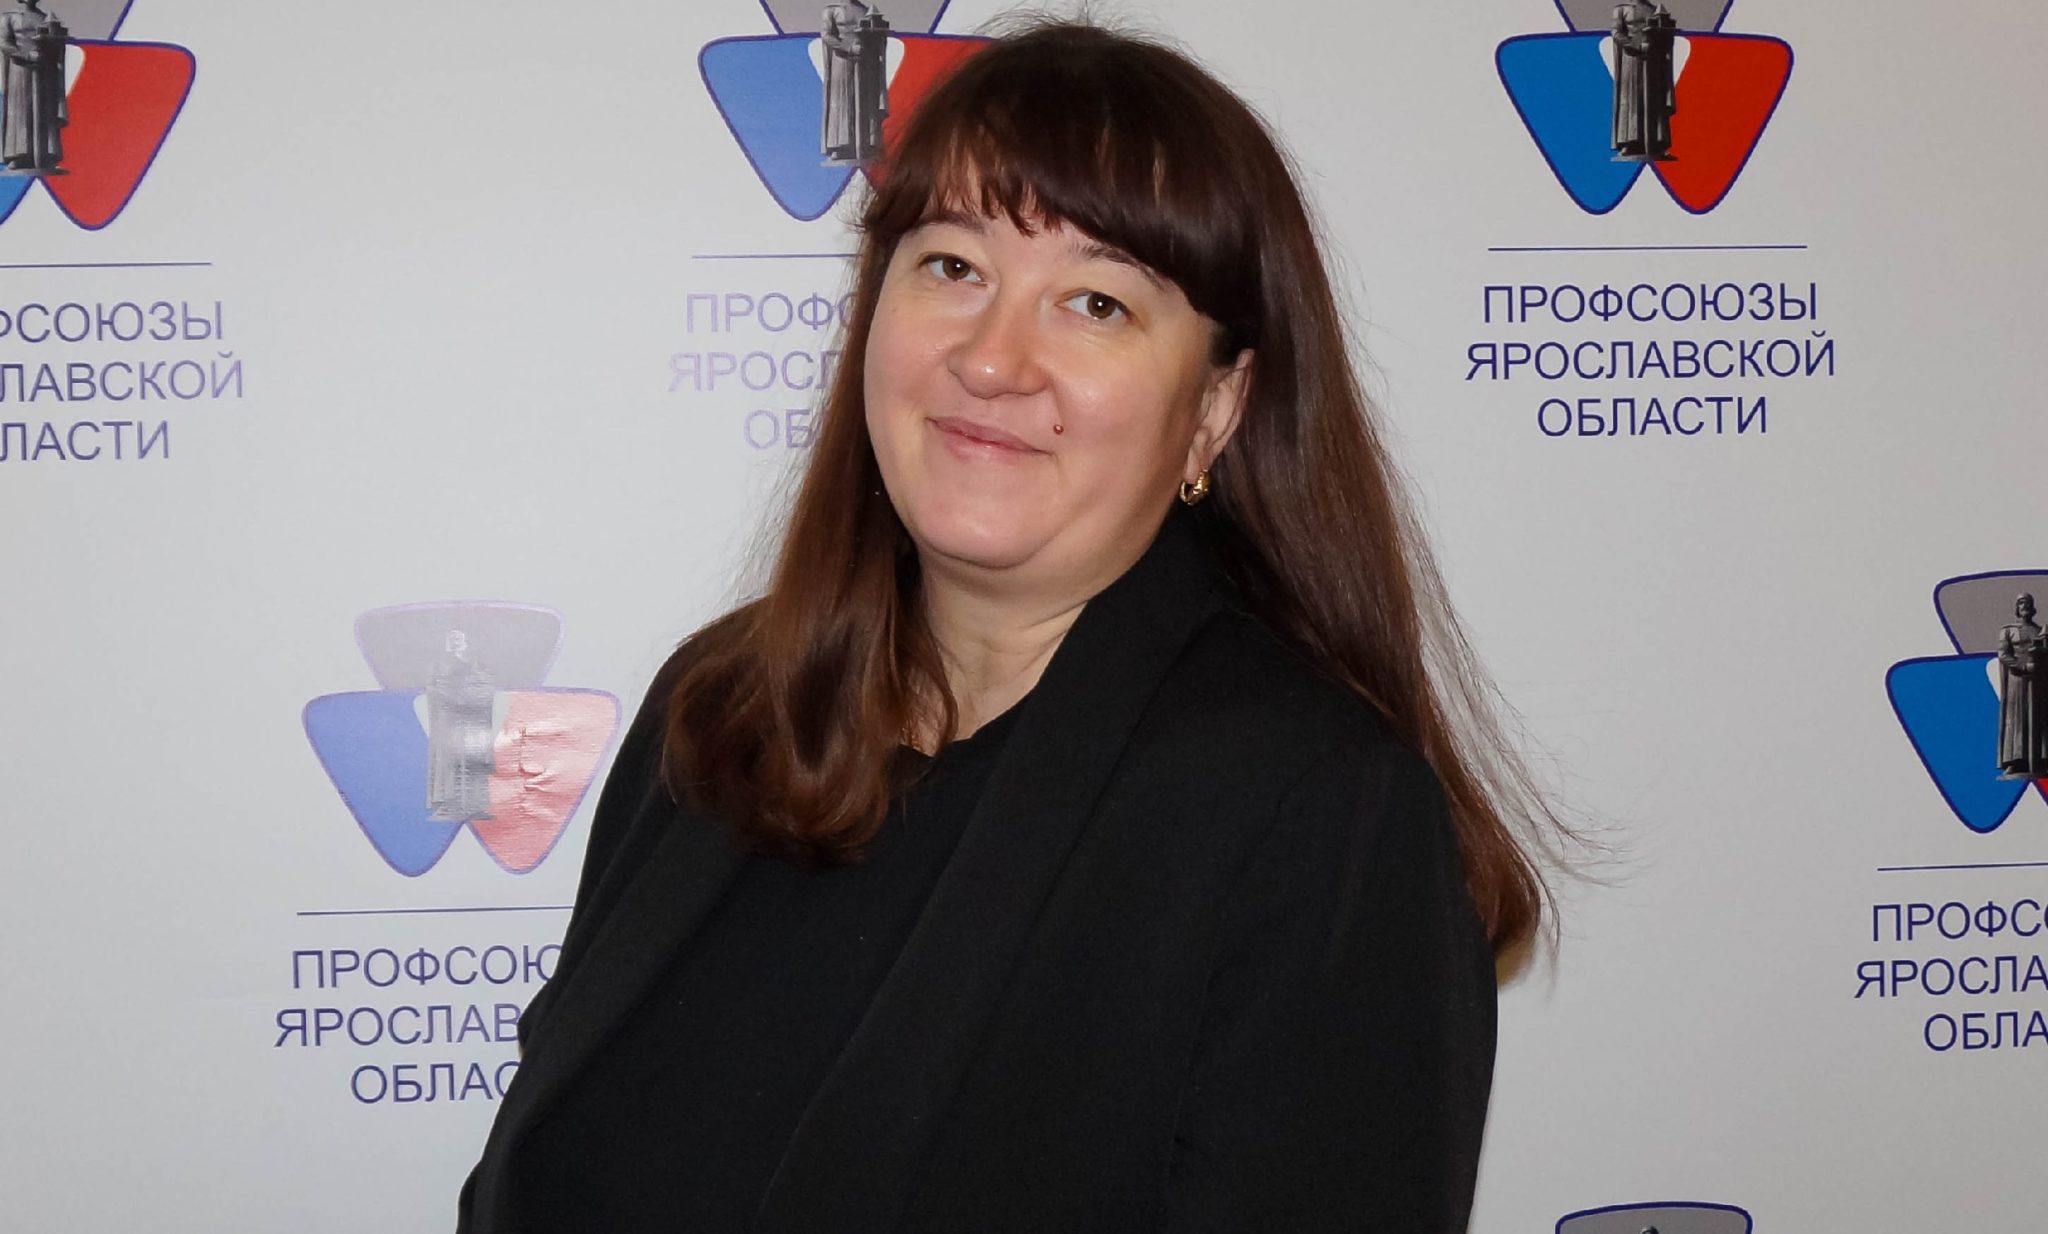 Новым председателем Молодежного совета стала Оксана Грачёва